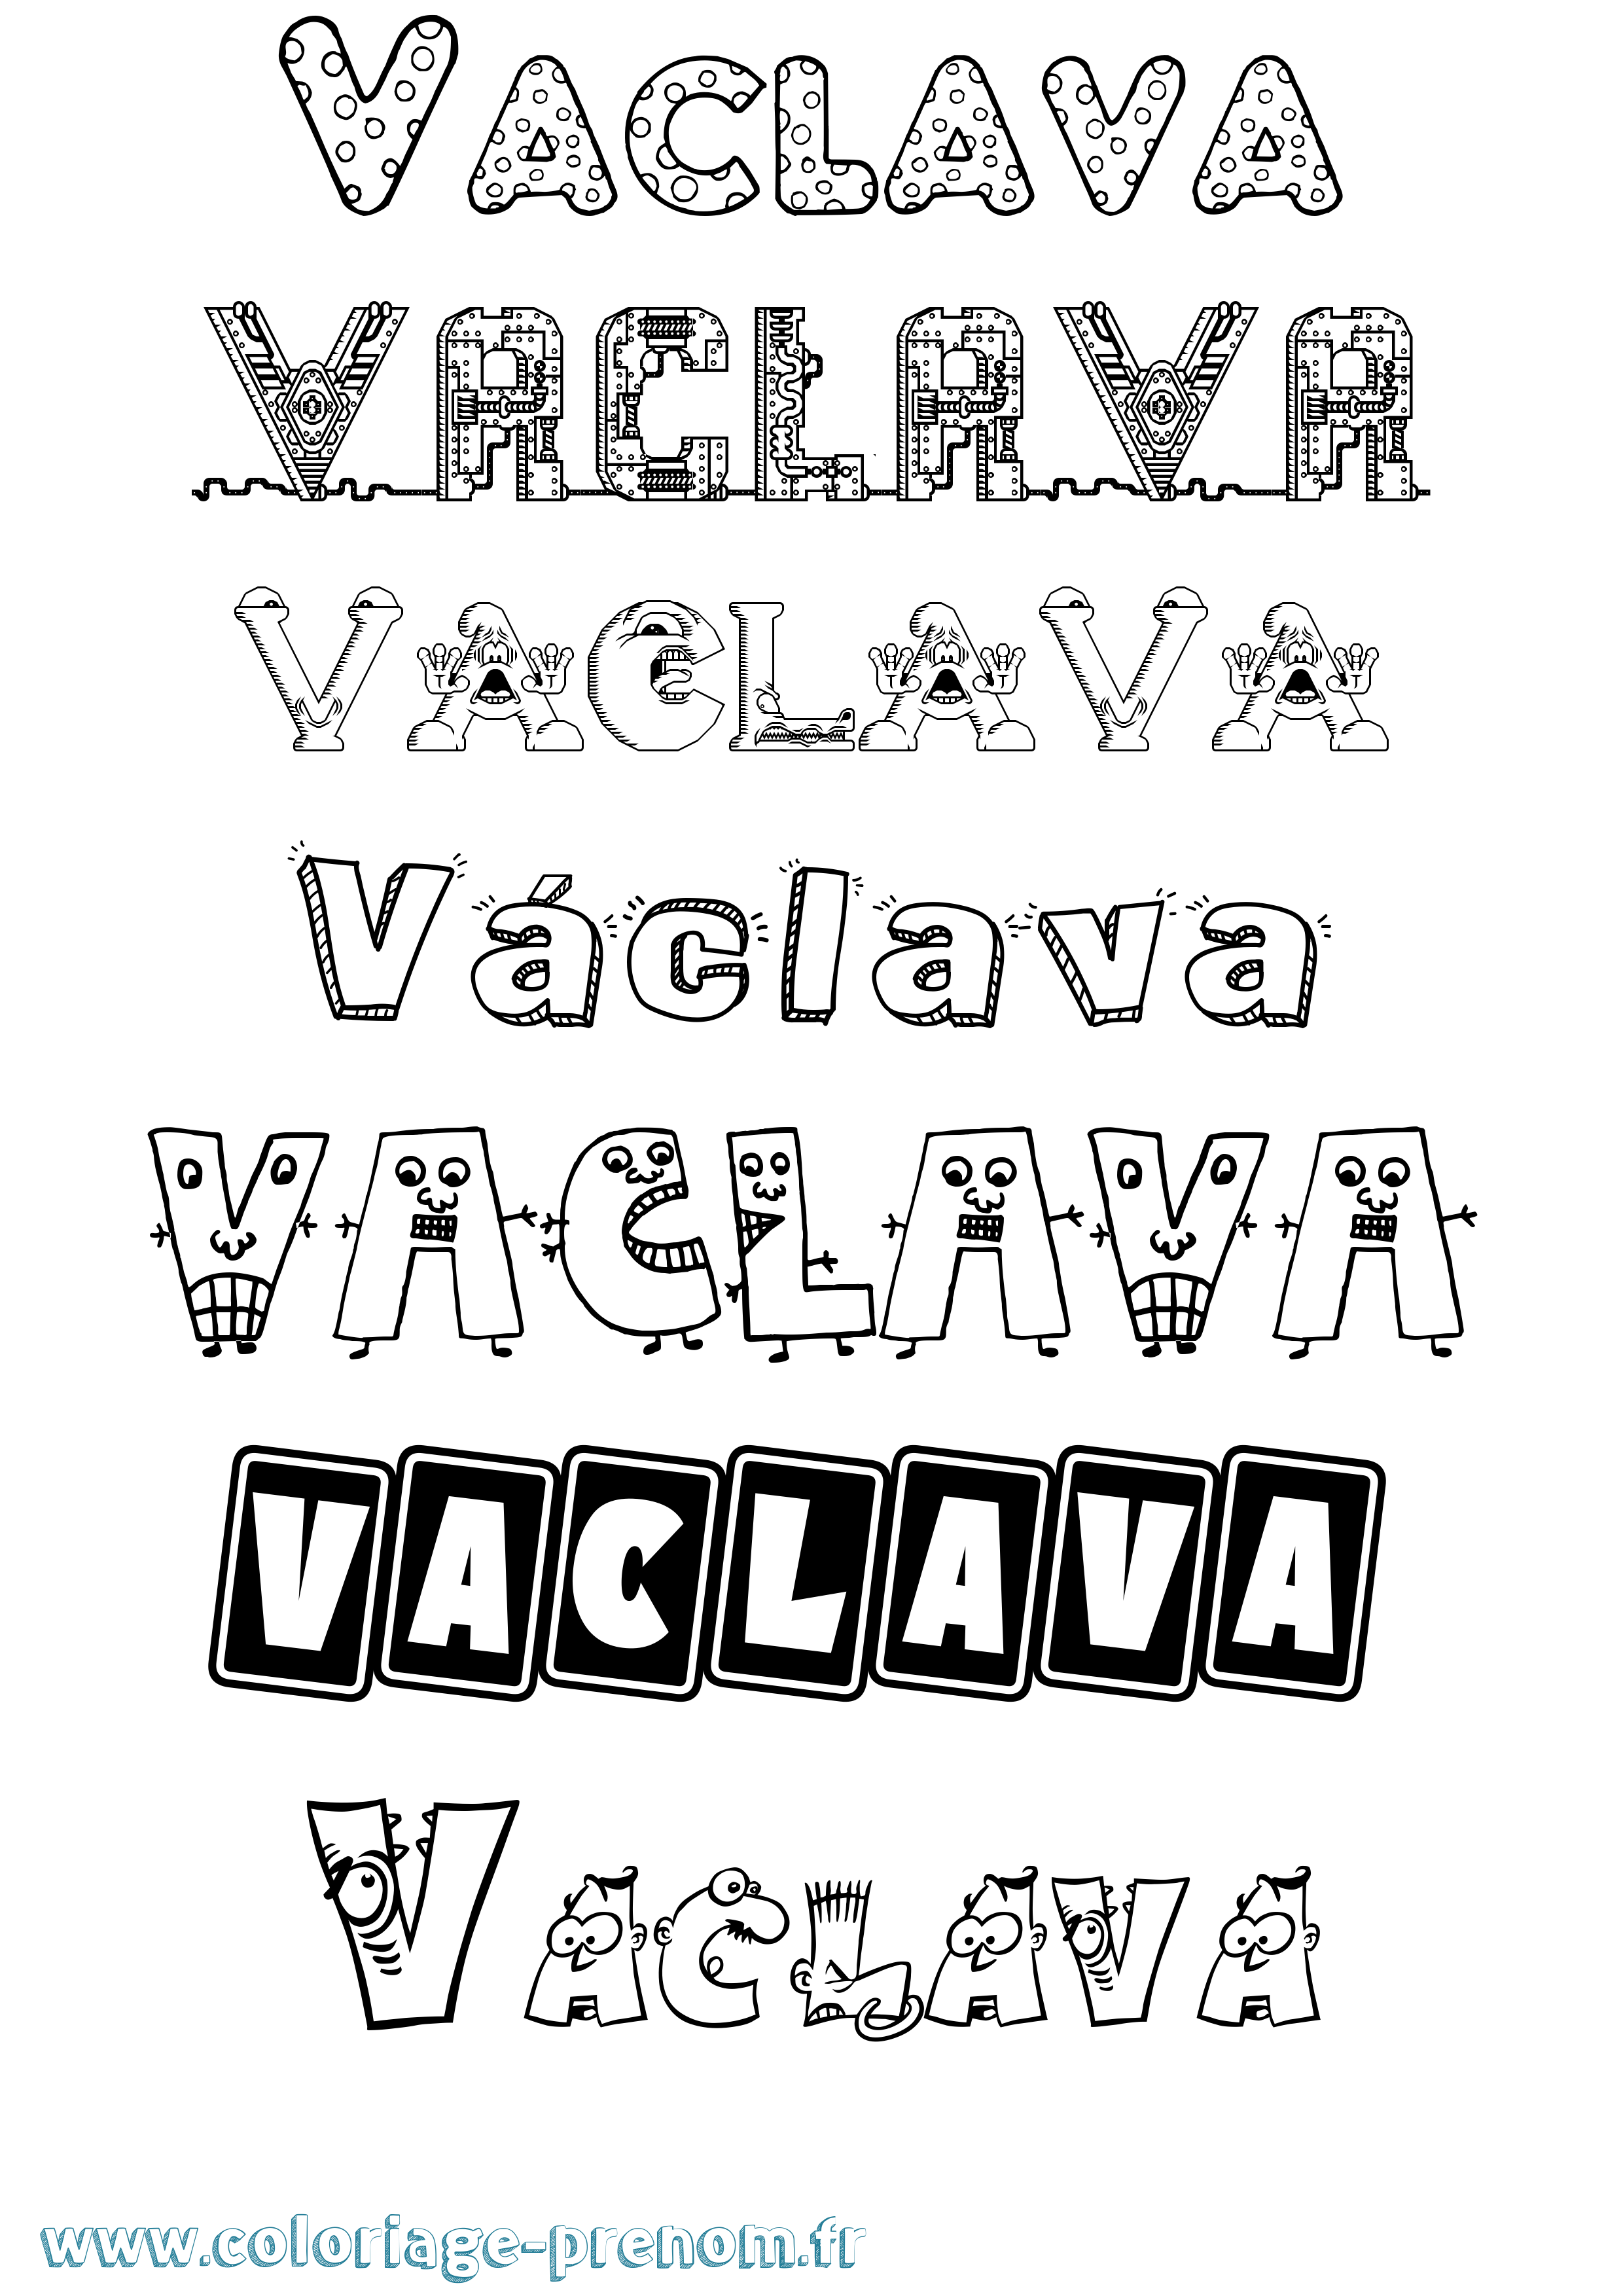 Coloriage prénom Václava Fun